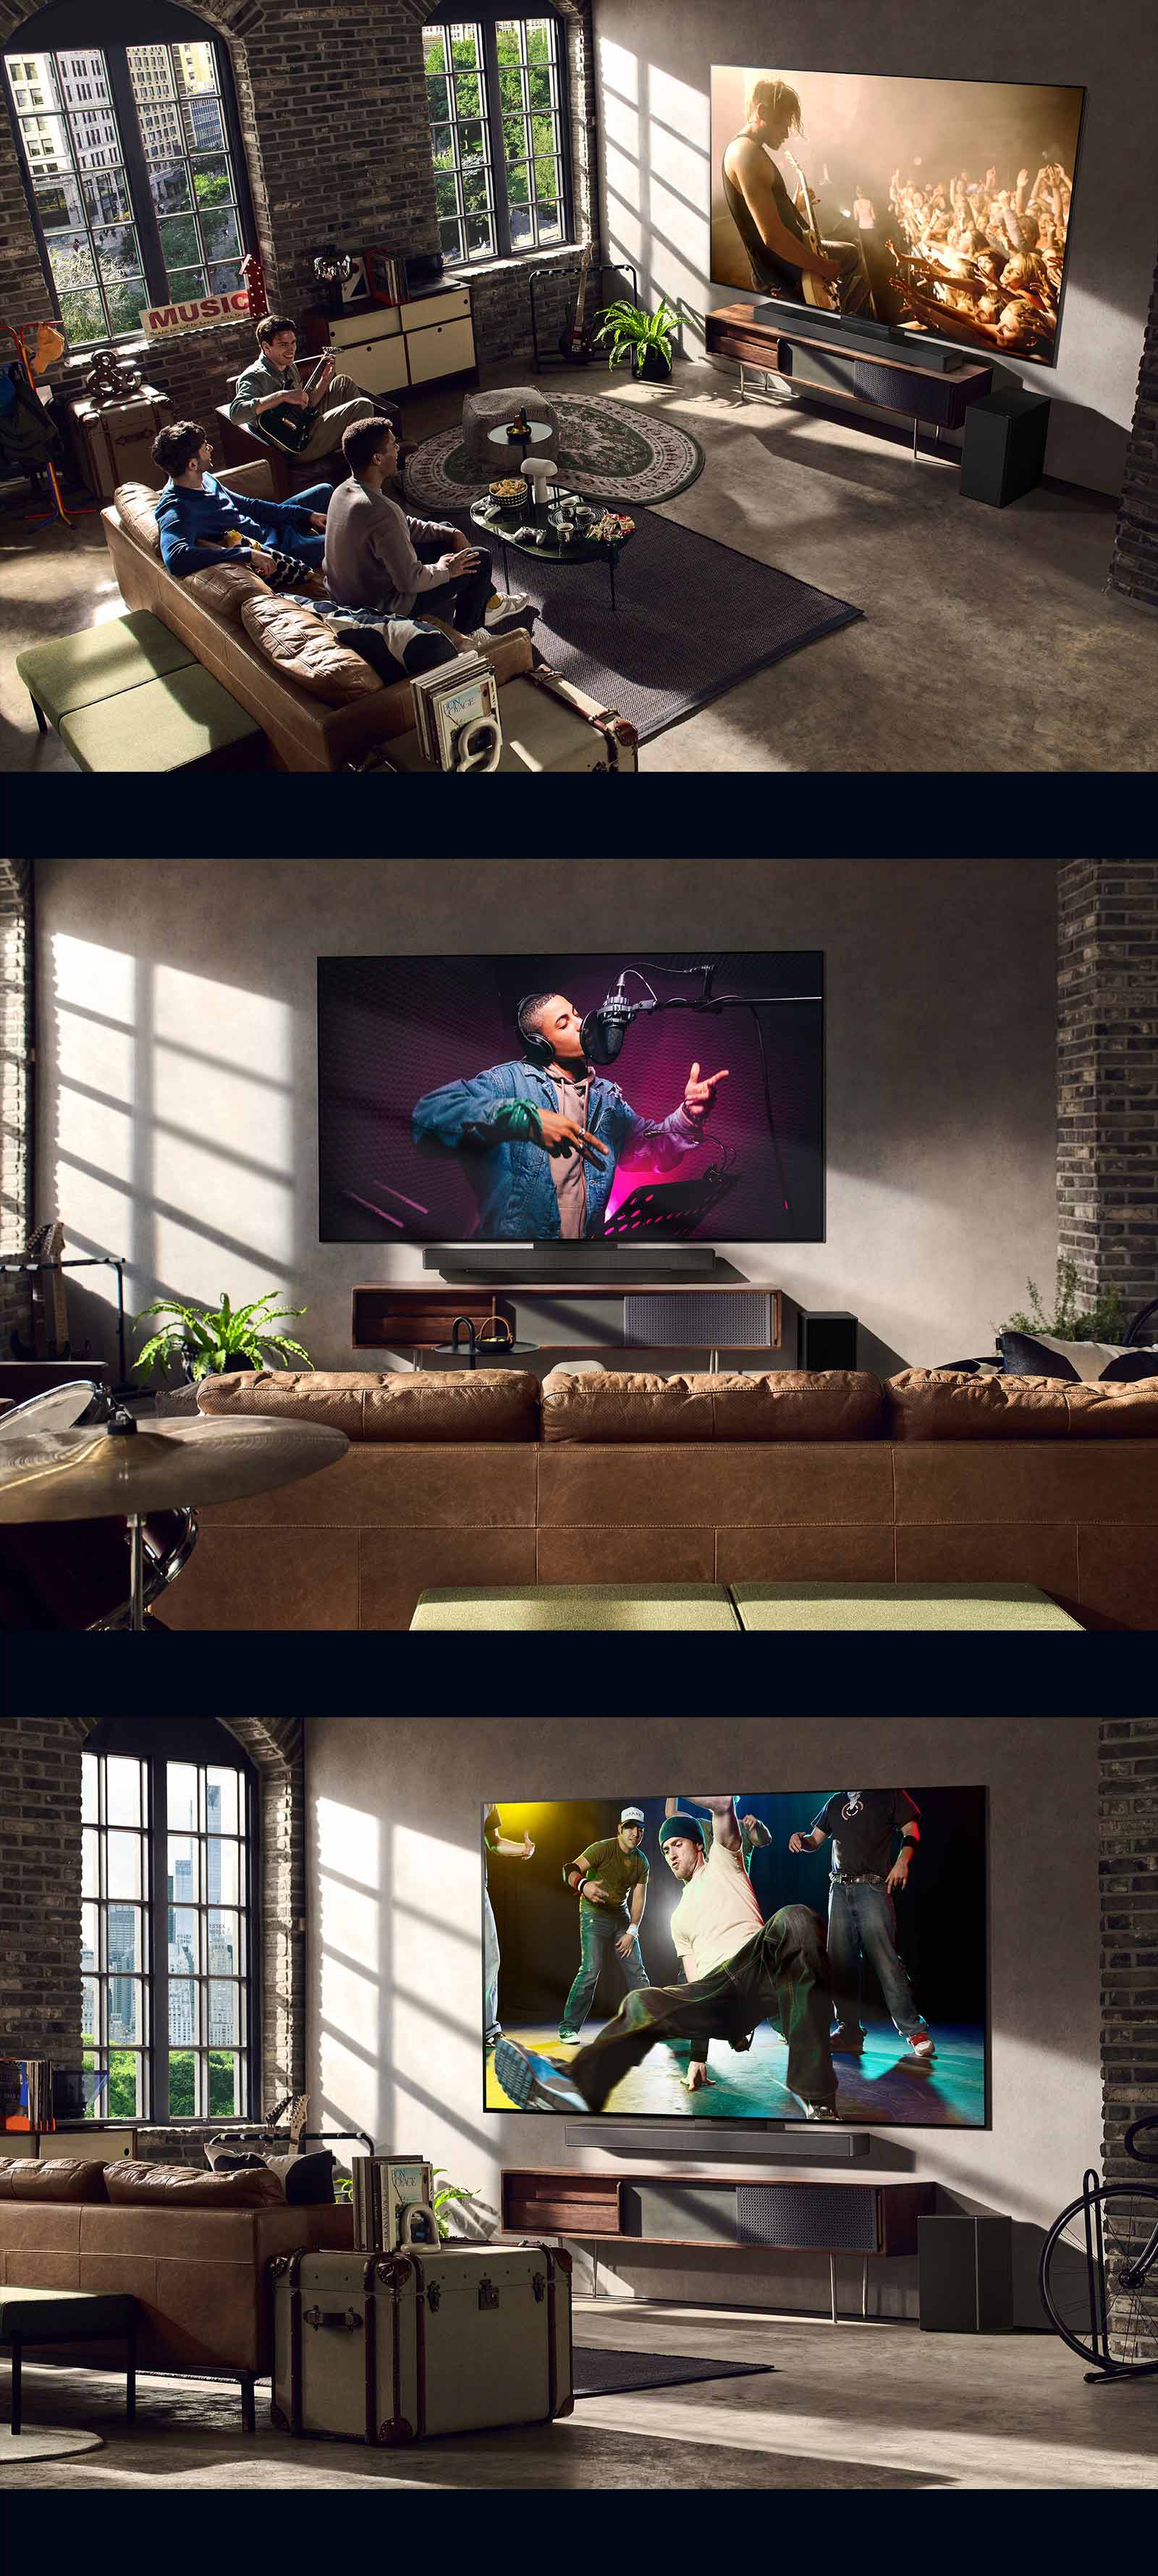 Có 3 hình ảnh về phong cách sống. Từ trên xuống dưới: 3 người đàn ông đang xem một video về buổi hòa nhạc trong phòng khách. Có một chiếc TV LG treo trên tường đang chiếu bản ghi âm nhạc và chiếc TV LG trên tường đang chiếu điệu nhảy breaking dance ở chế độ xem chéo.